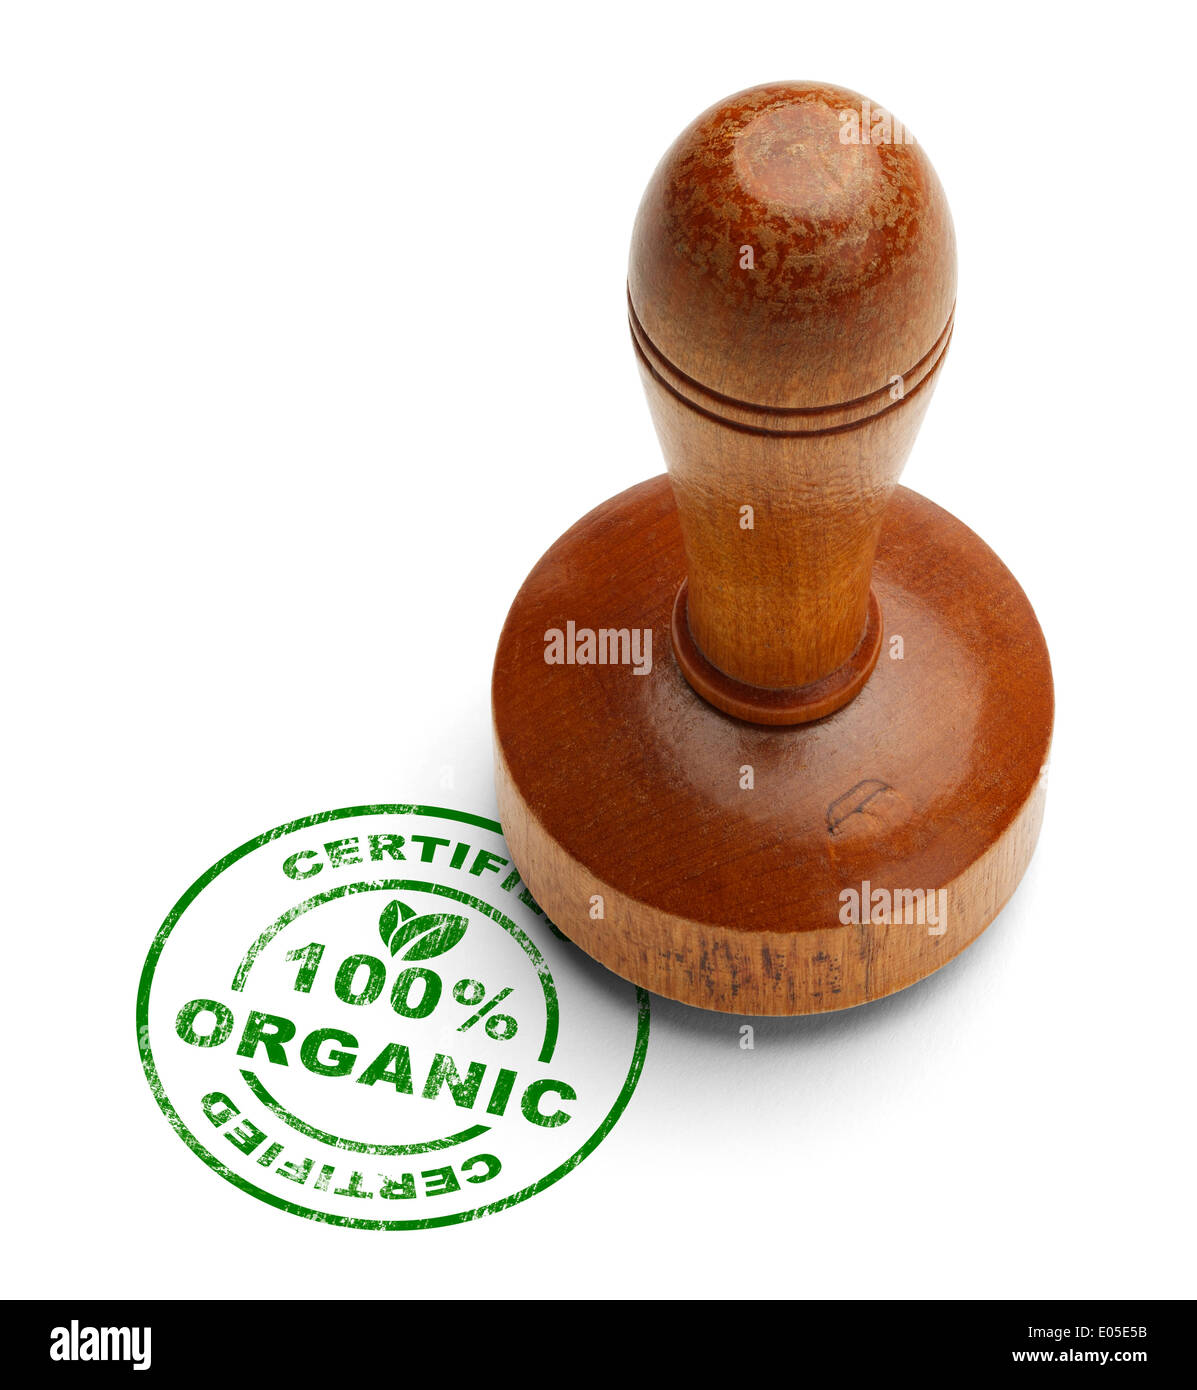 Grün 100 % zertifizierte organische Stempel mit hölzernen Stamper, Isolated on White Background. Stockfoto